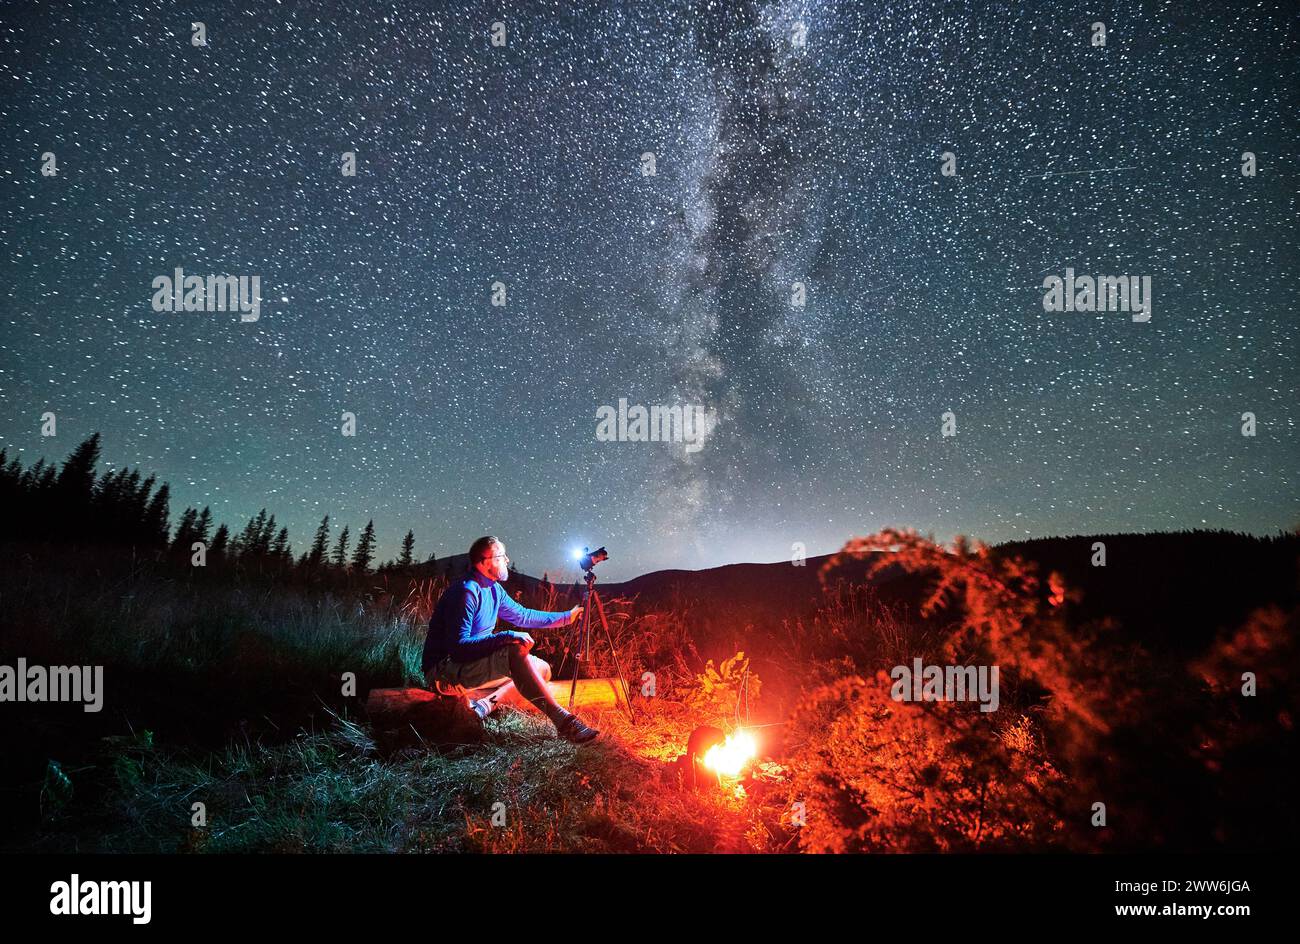 Giovane uomo che scatta foto di cielo stellato in montagna. Fotografo maschio seduto su una macchina fotografica di legno e messa a fuoco. Uomo con macchina fotografica seduta accanto al fuoco del campo. Foto Stock